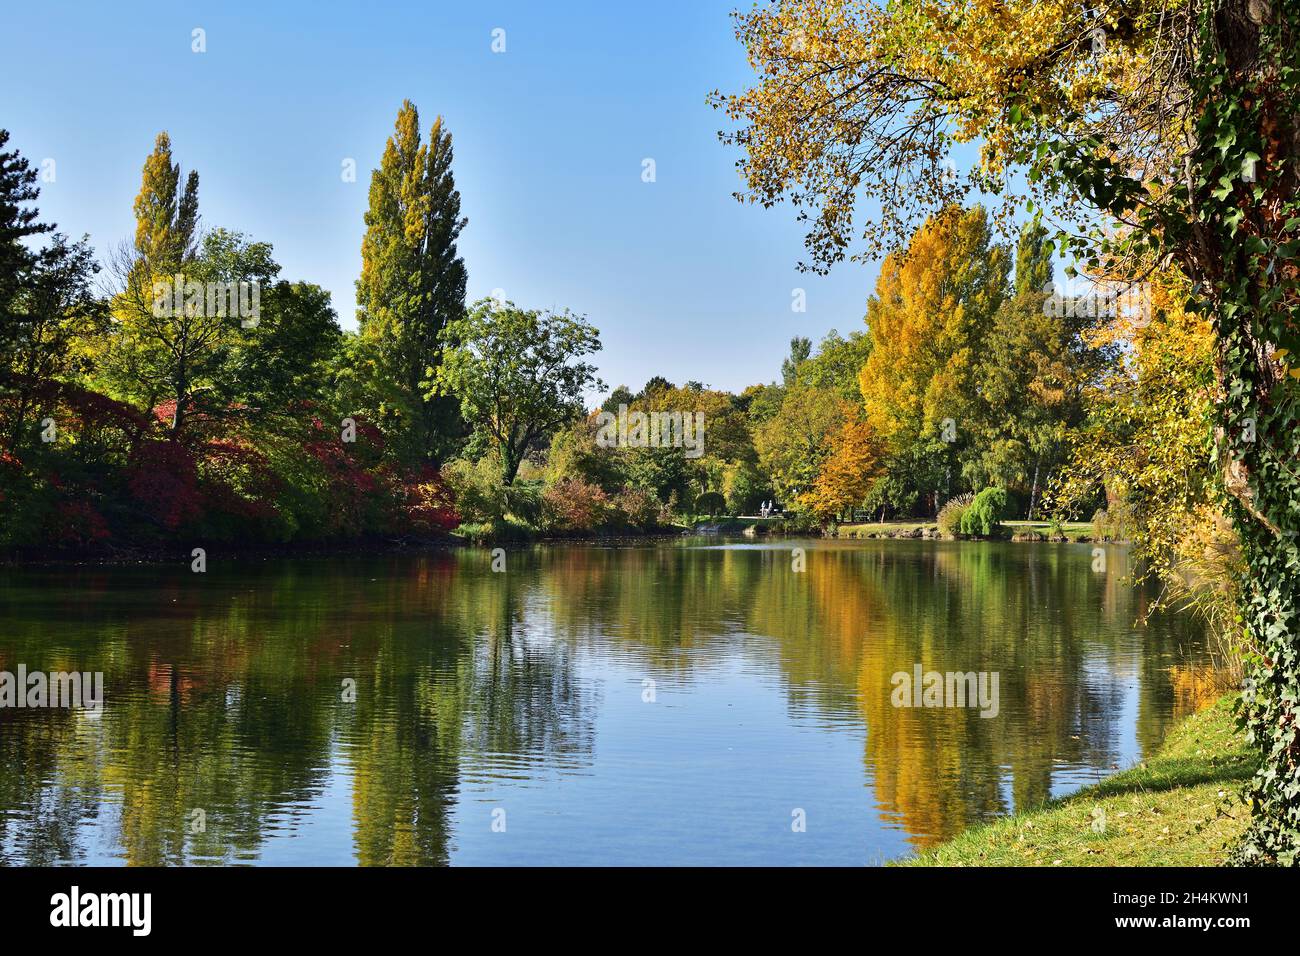 Wasserpark Floridsdorf in Vienna, Austria on a sunny autumn day Stock Photo